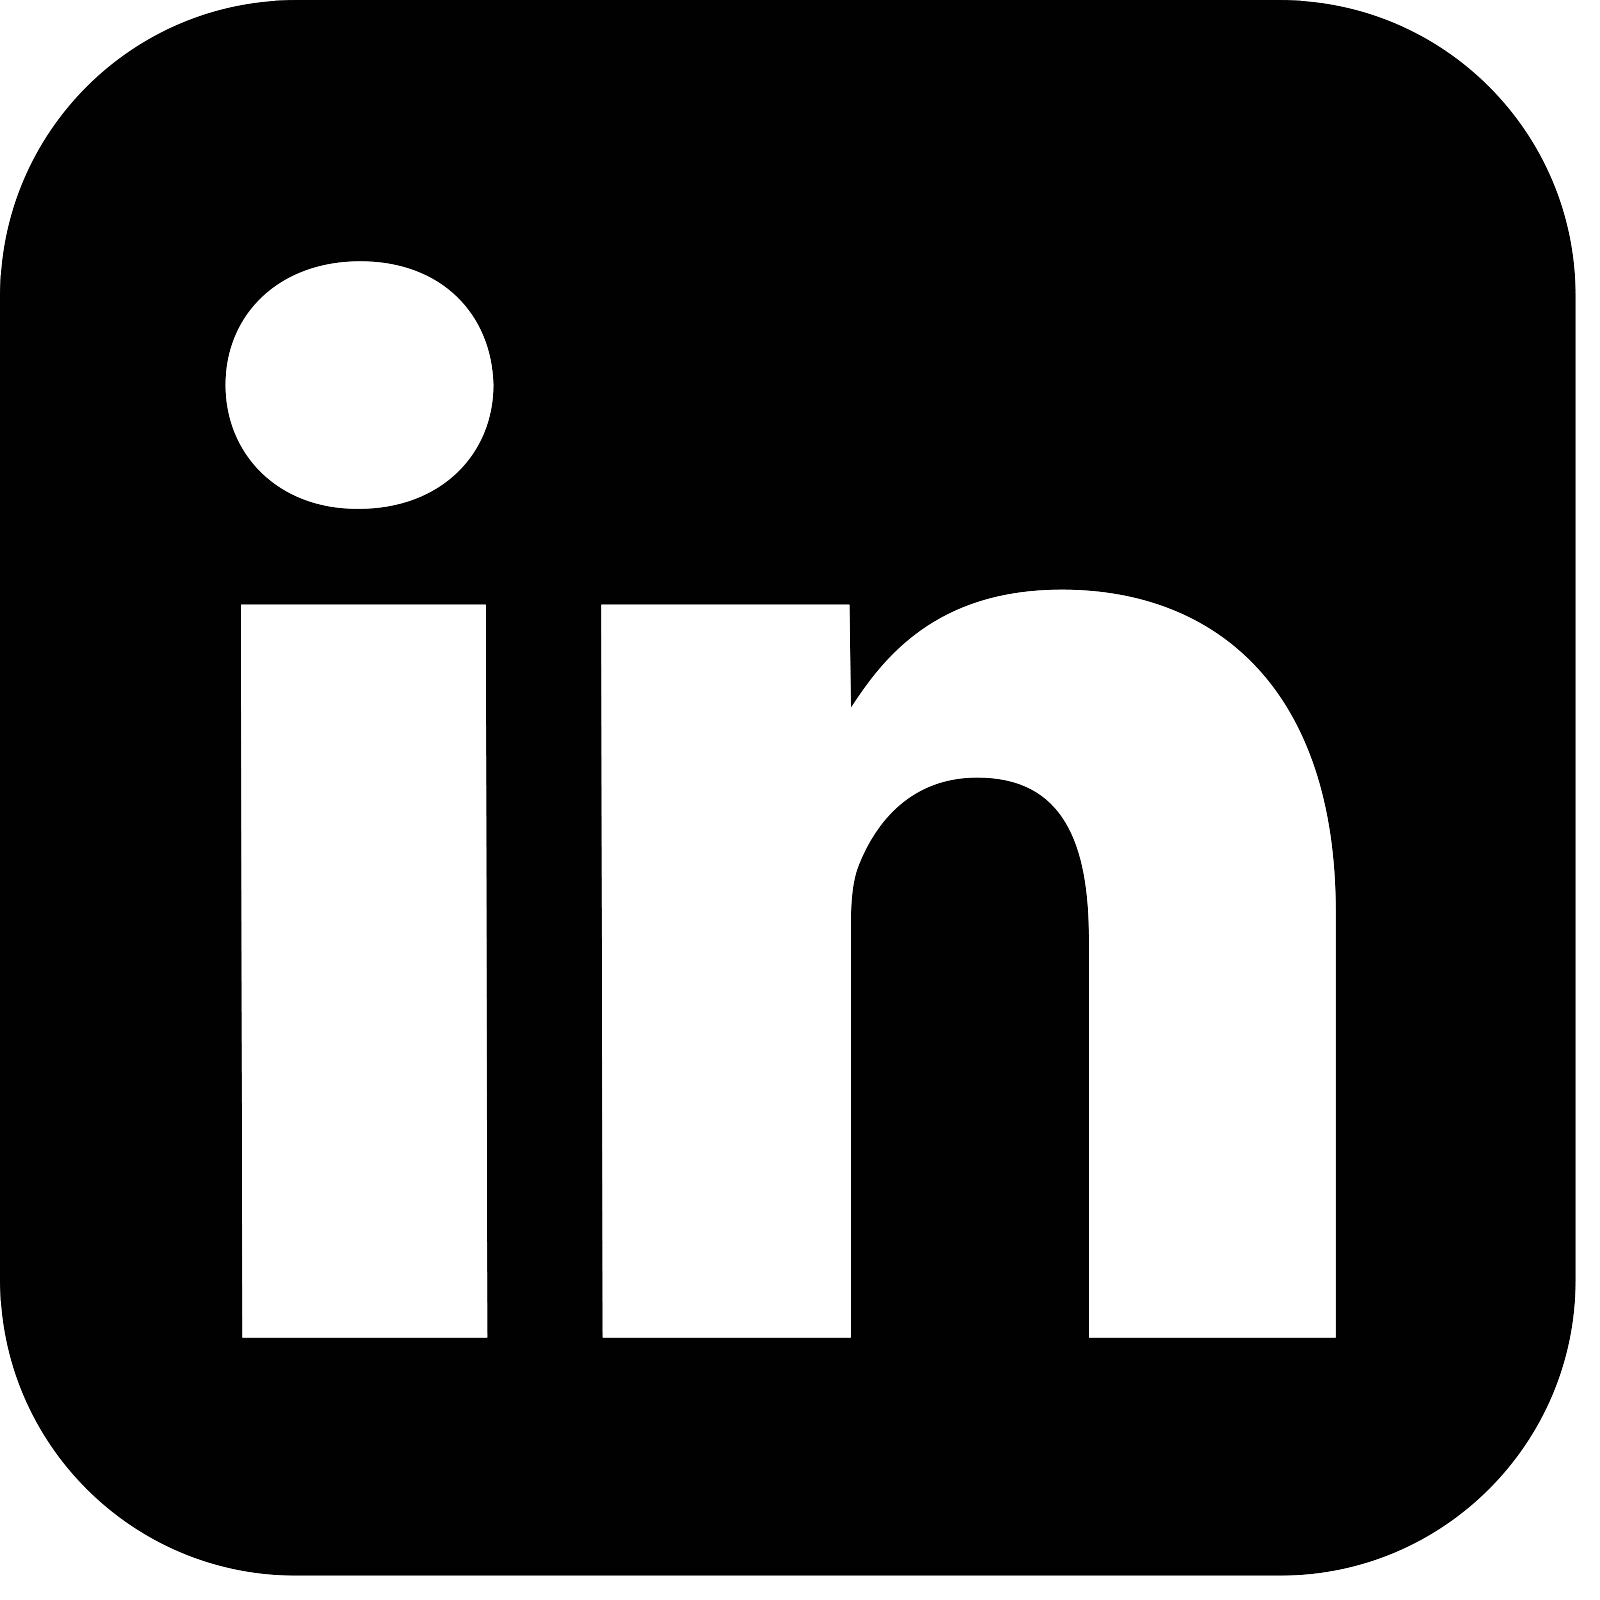 new-linkedin-logo-white-black-png